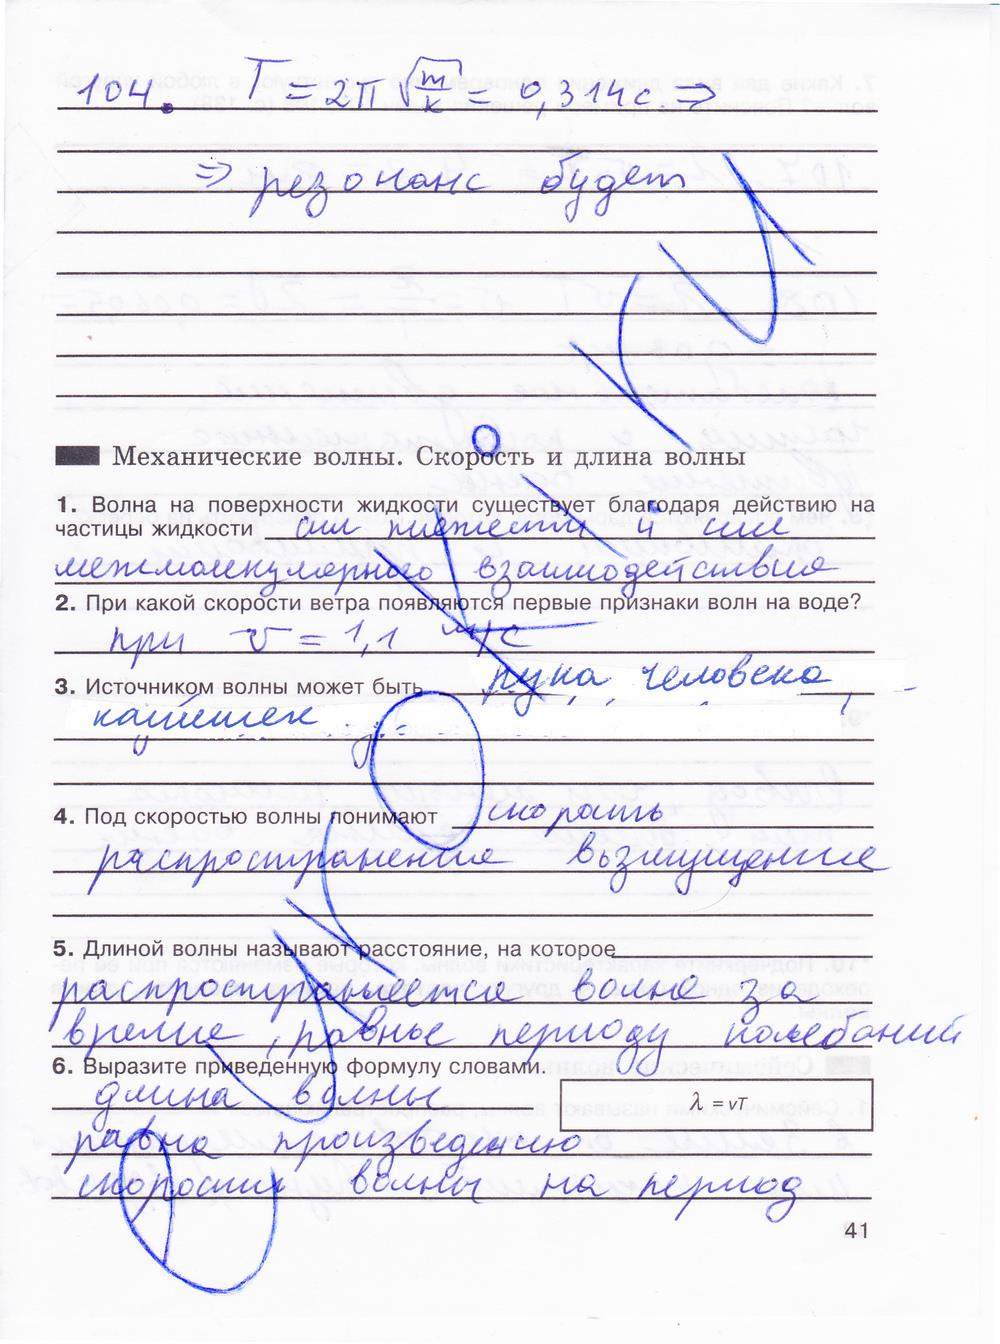 гдз 8 класс рабочая тетрадь страница 41 физика Мартынова, Иванова, Воронина